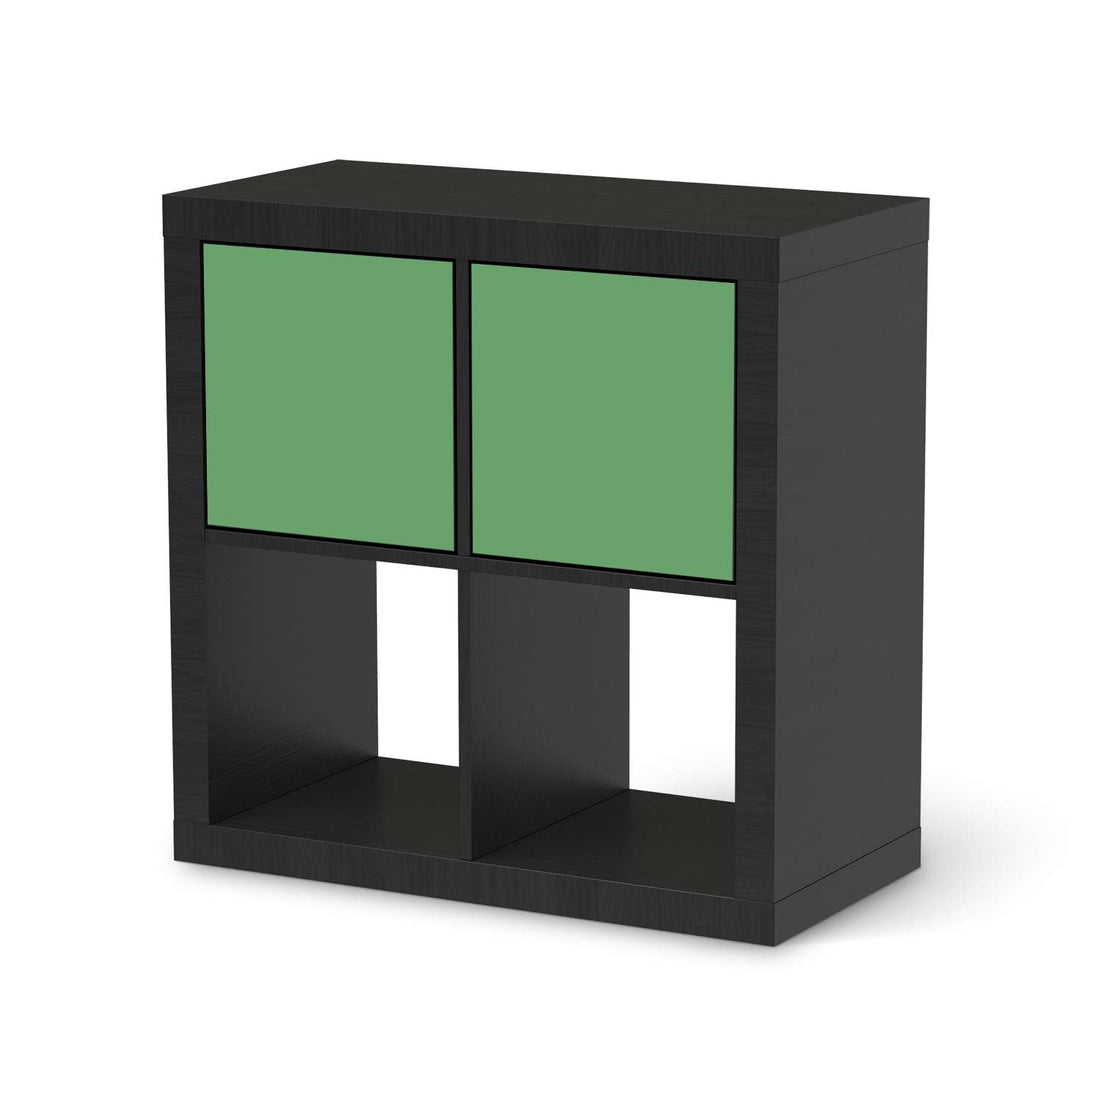 Möbelfolie Grün Light - IKEA Kallax Regal 2 Türen Quer - schwarz